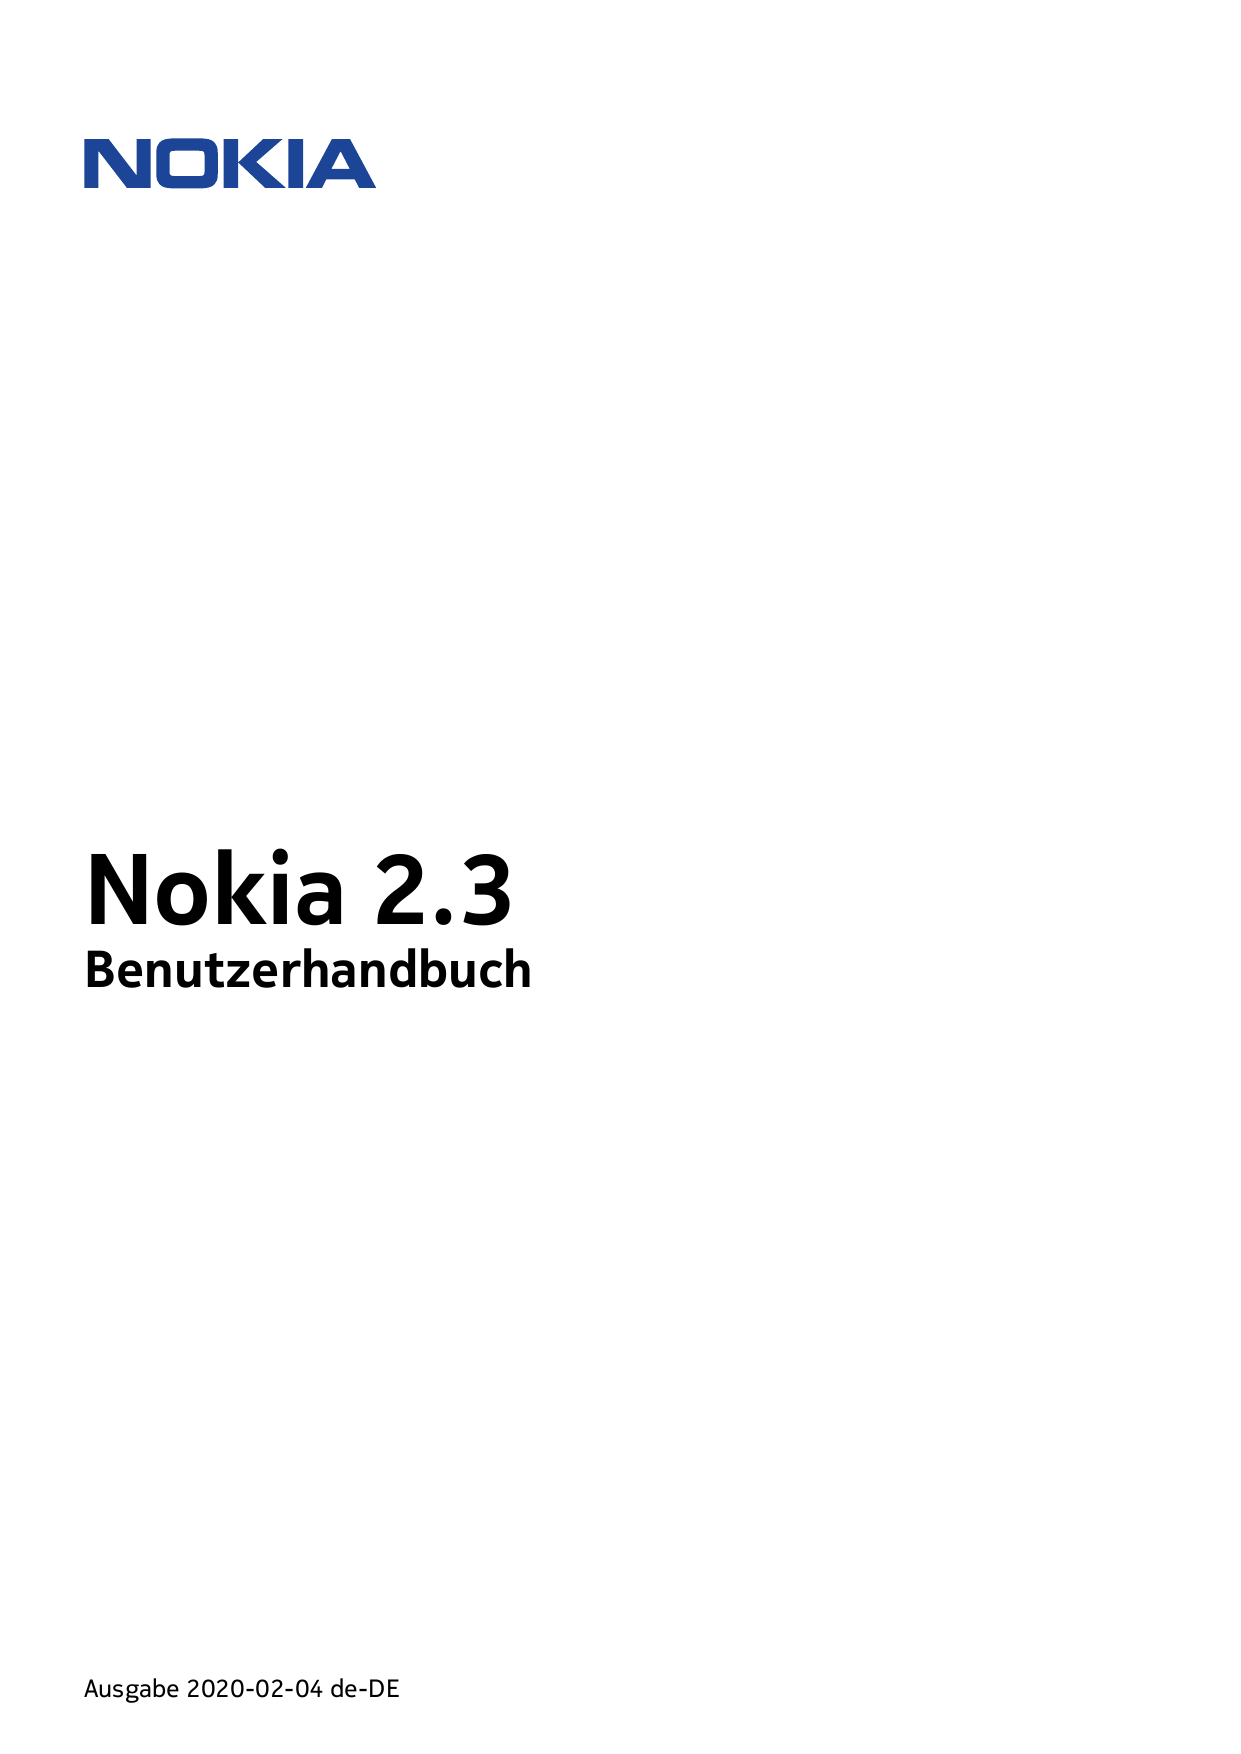 Nokia 2.3BenutzerhandbuchAusgabe 2020-02-04 de-DE